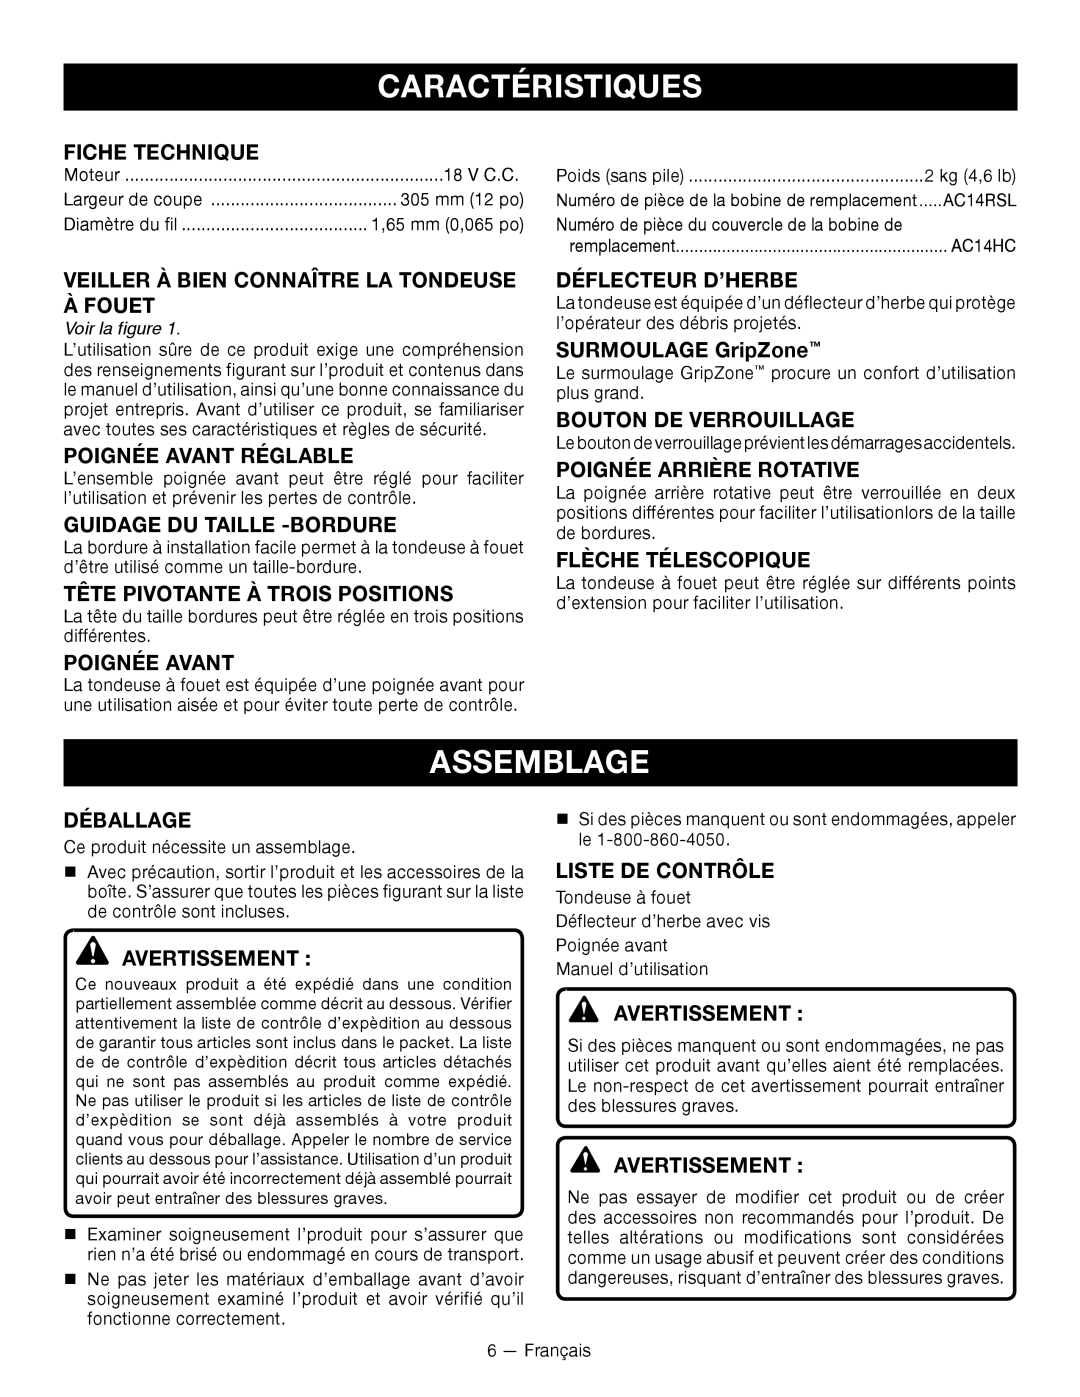 Ryobi P2005 manuel dutilisation Caractéristiques, Assemblage 